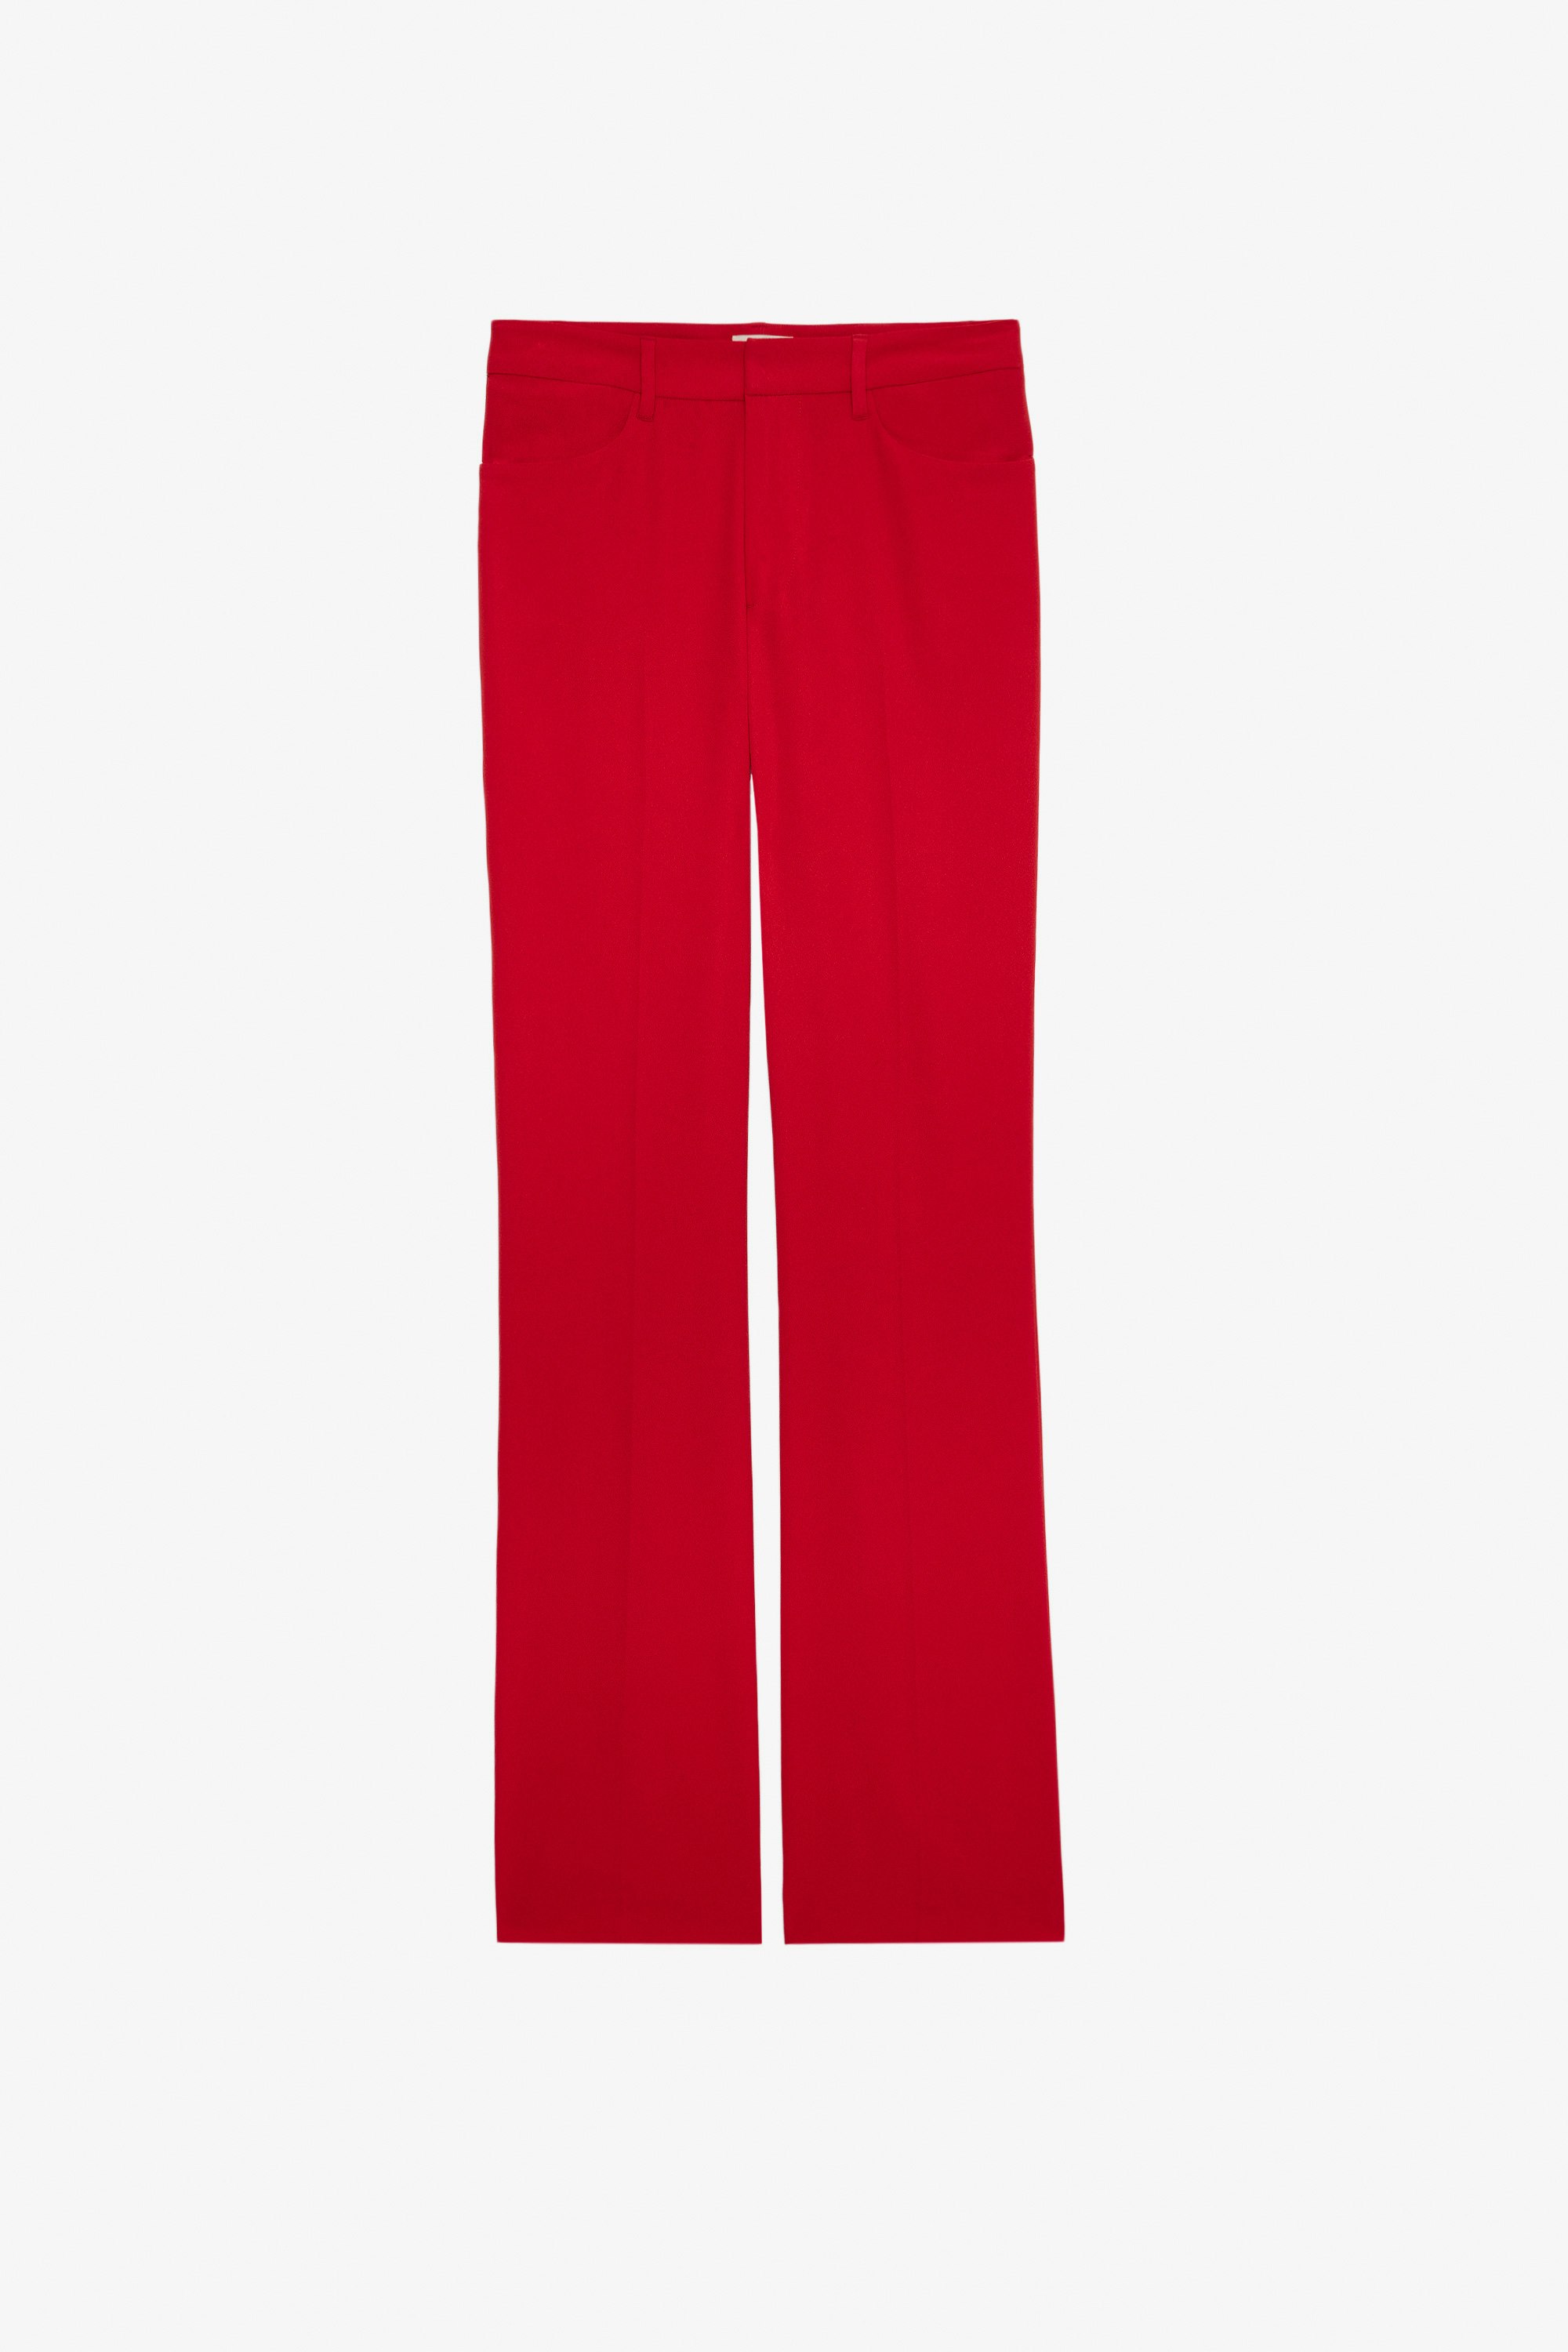 Pantalón Pistol - Pantalón rojo de traje de crepé para mujer.